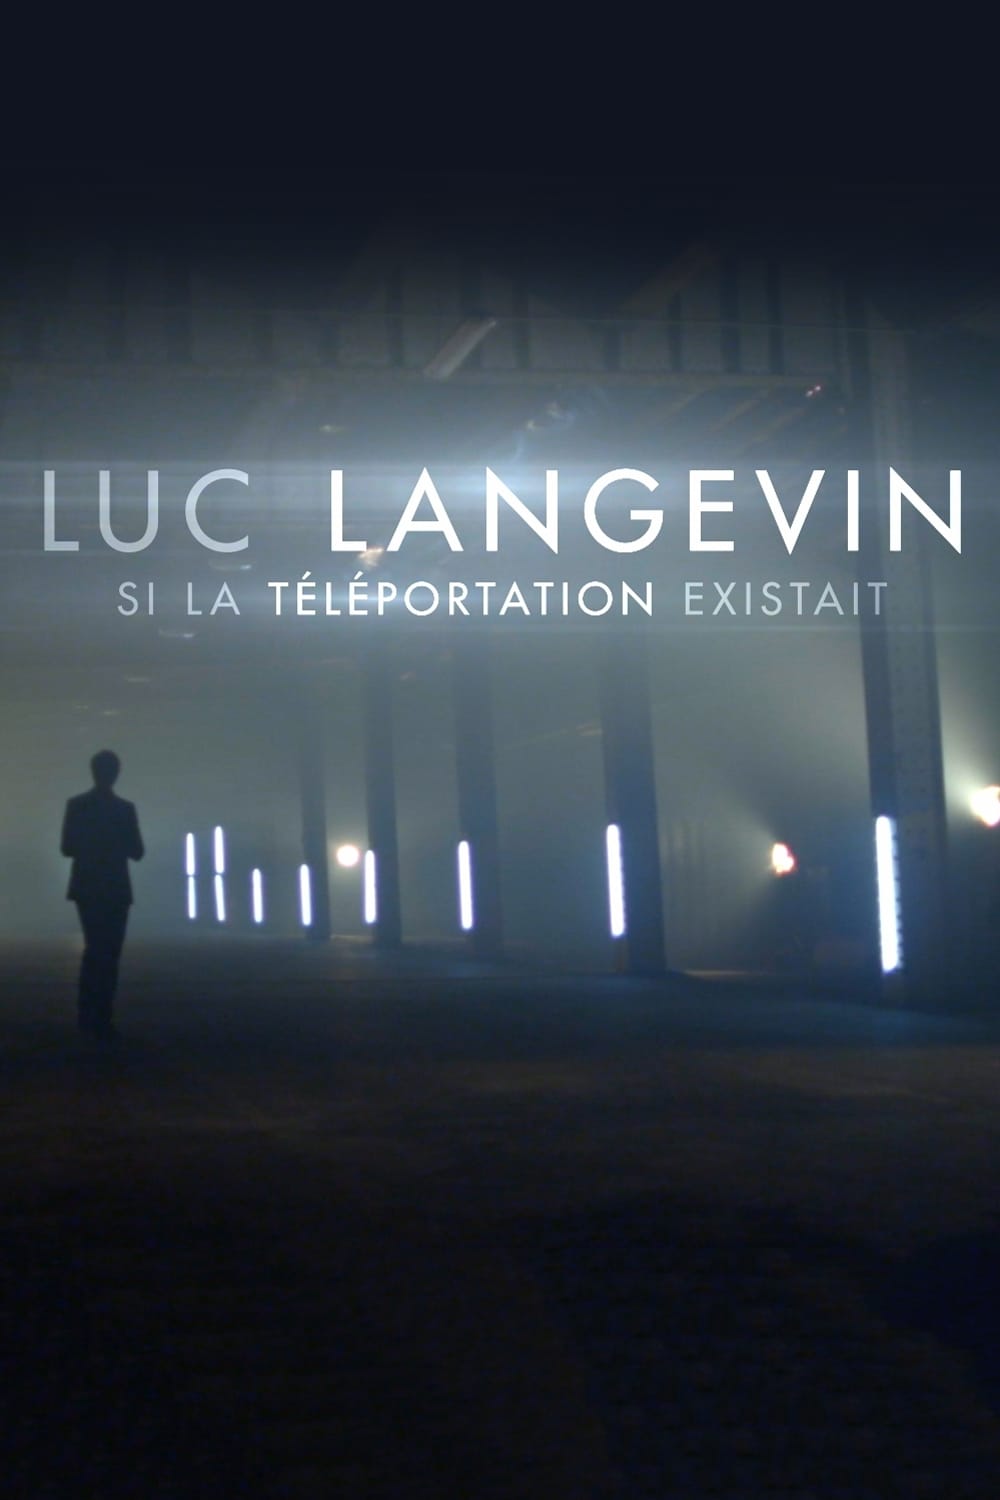 Luc Langevin - Si la téléportation existait